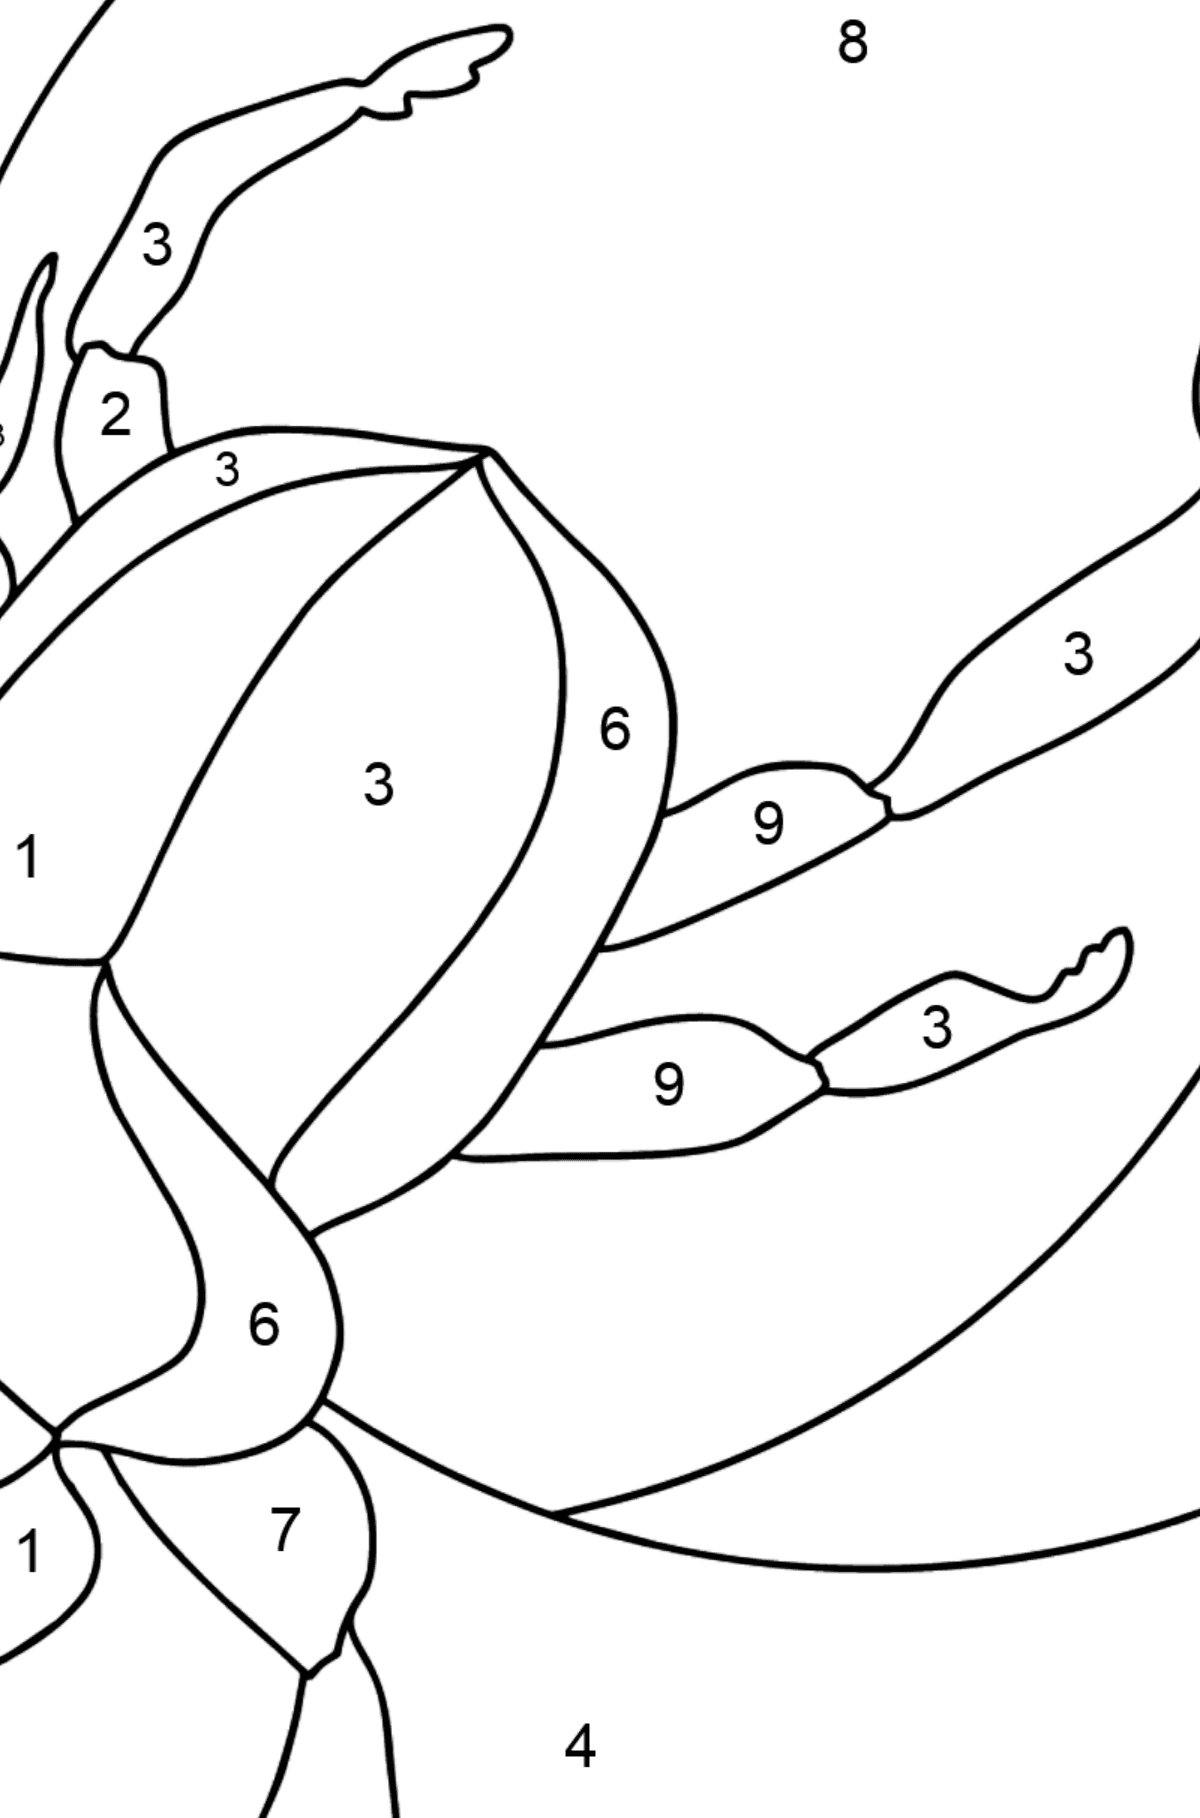 Desenho de escaravelhombolo para colorir (difícil) - Colorir por Números para Crianças